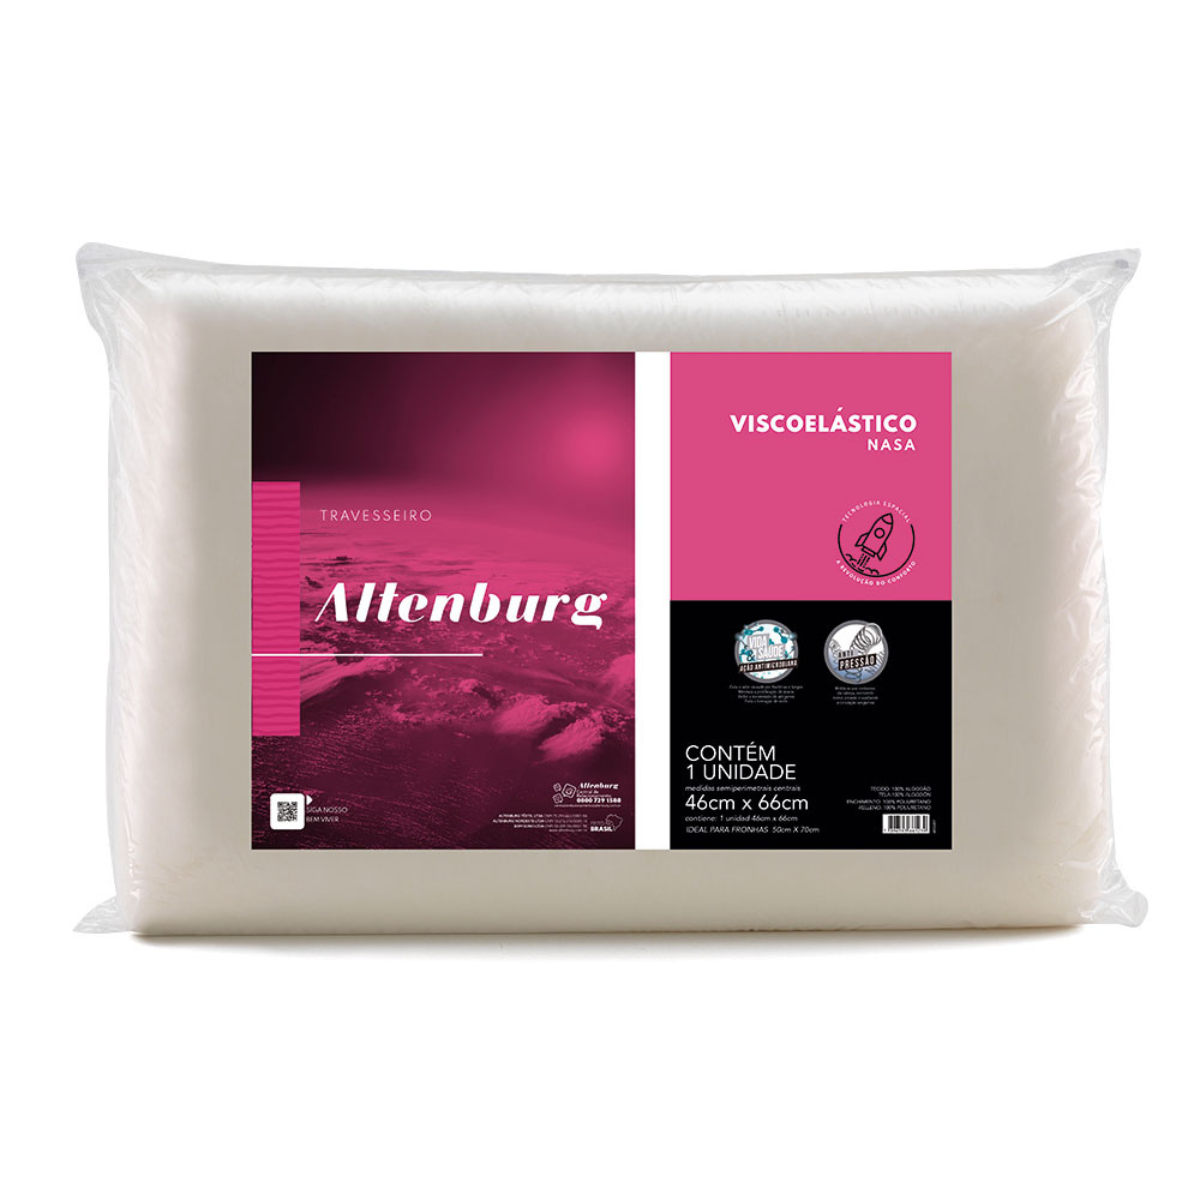 Travesseiro Altenburg Viscoelástico Nasa Marfim - 1